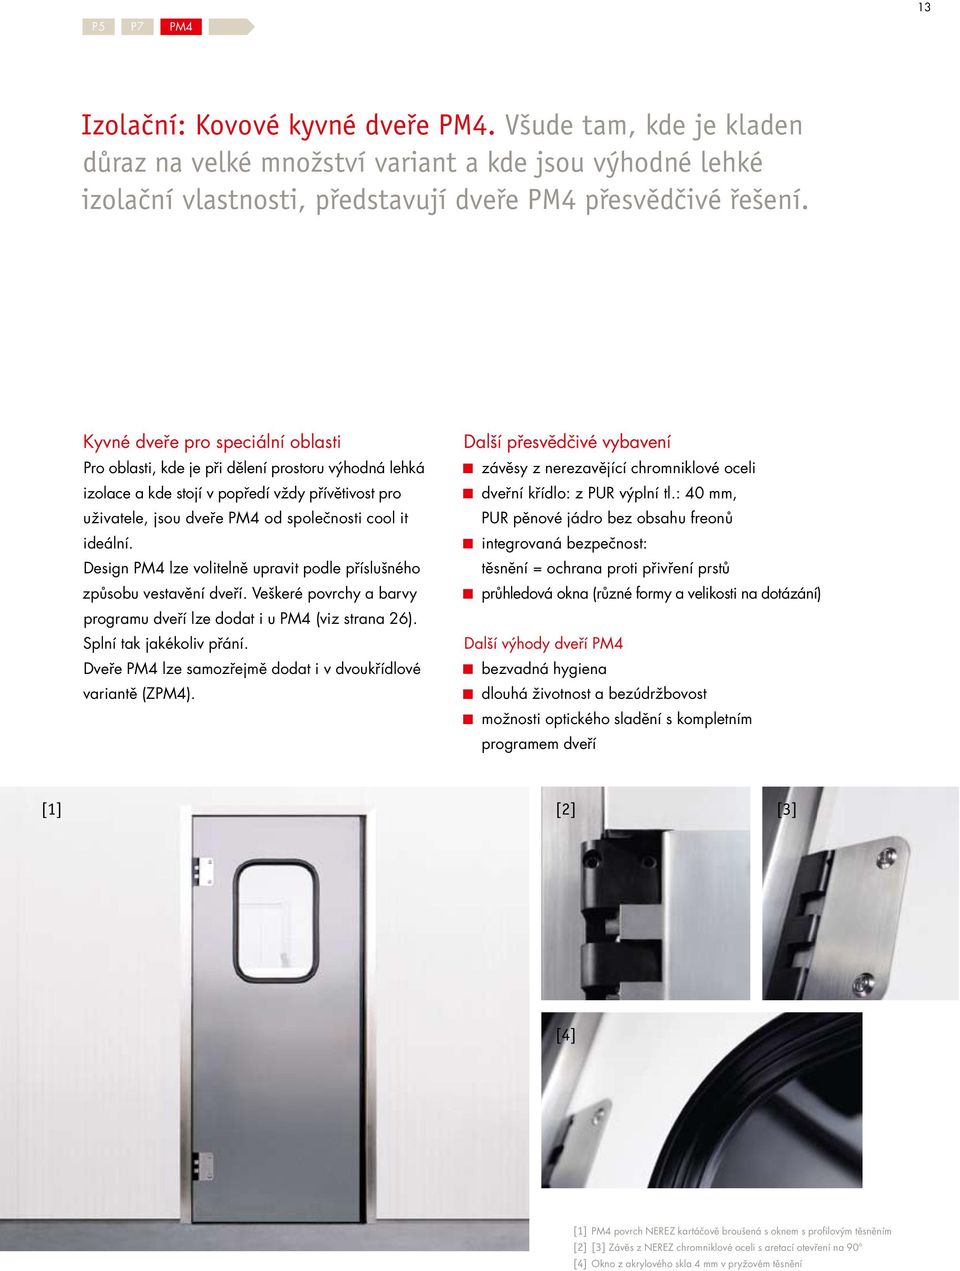 Design PM4 lze volitelně upravit podle příslušného způsobu vestavění dveří. Veškeré povrchy a barvy programu dveří lze dodat i u PM4 (viz strana 26). Splní tak jakékoliv přání.